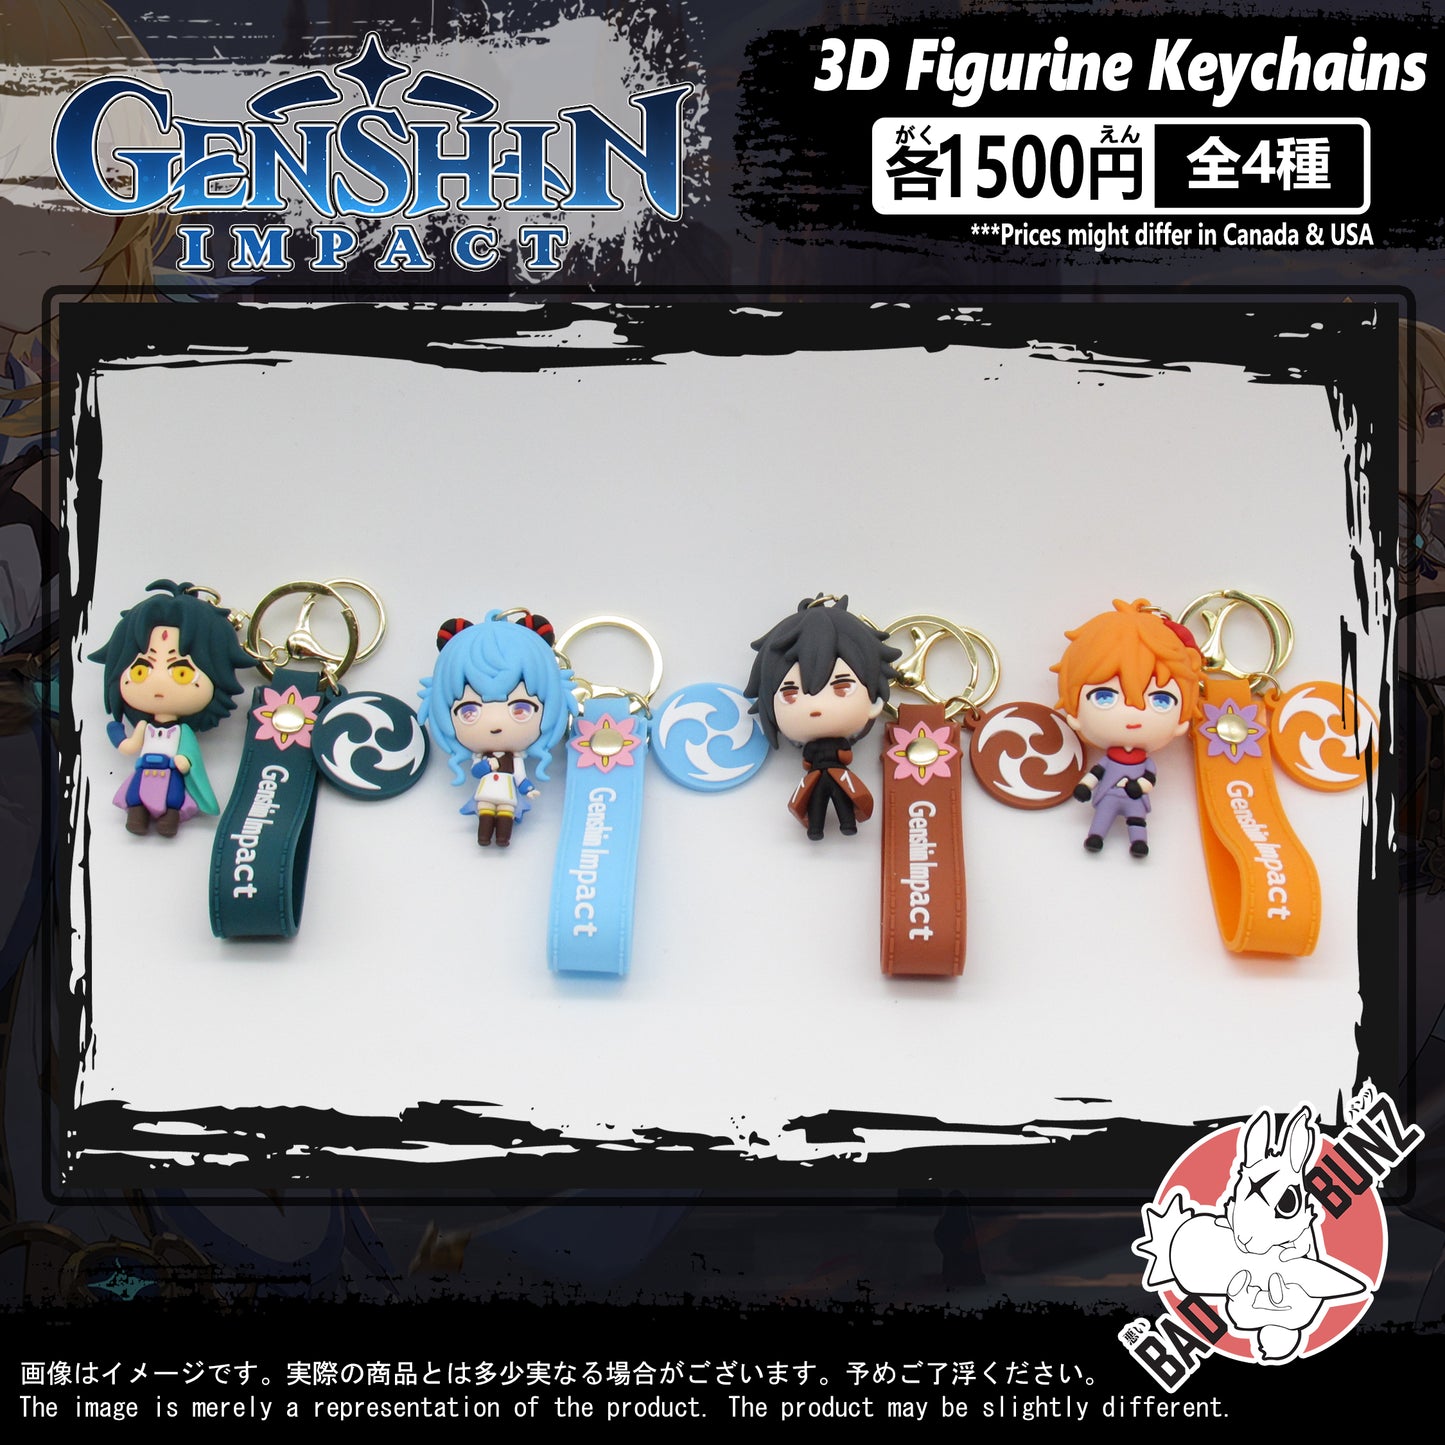 (GSN-01PVC) Genshin Impact Gaming PVC 3D Figure Keychain (0, 0, 110, 0)